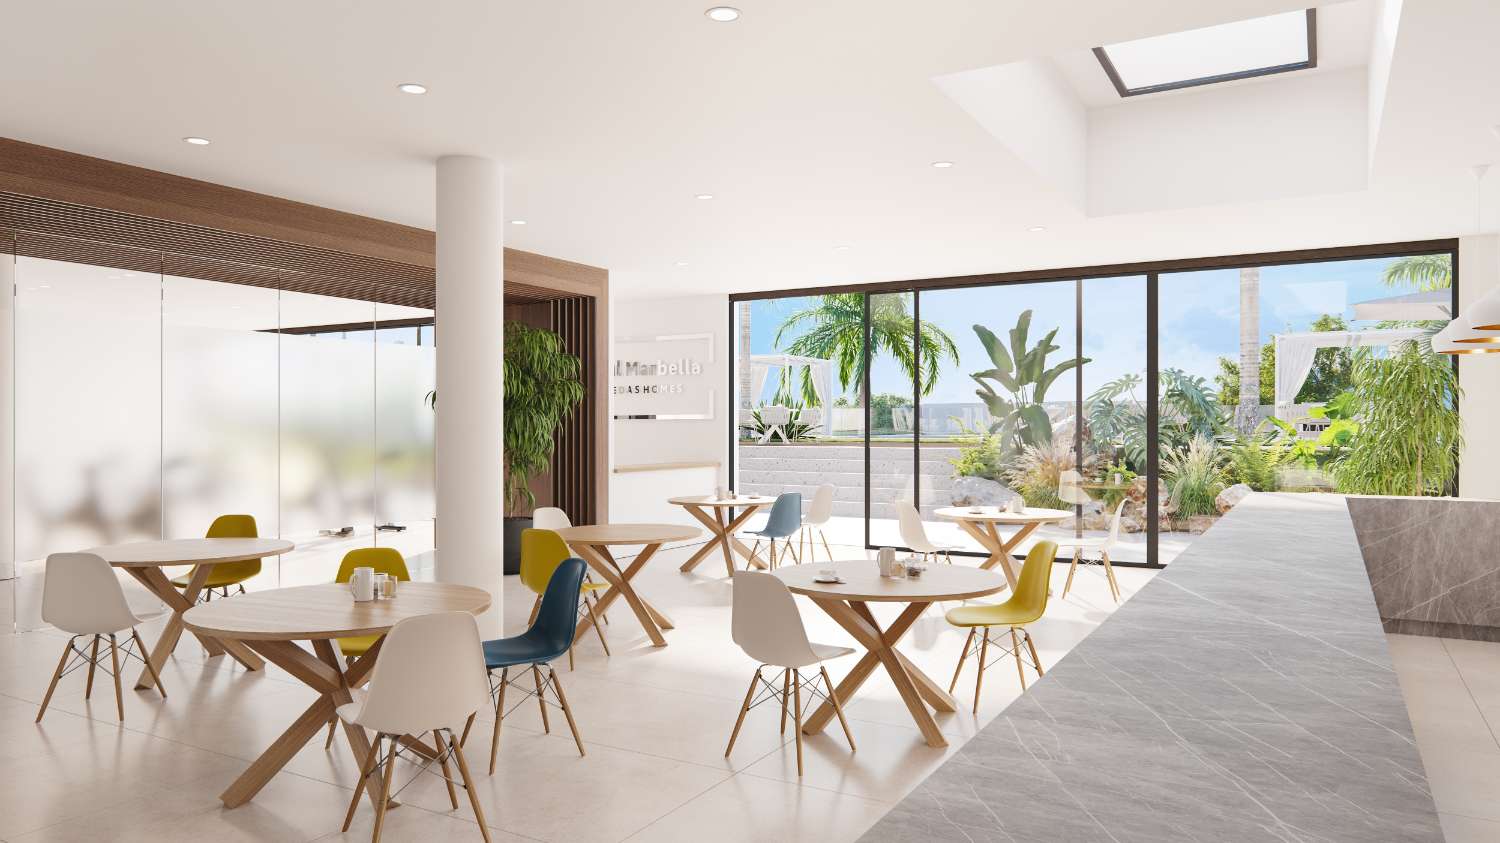 Ruim en exclusief appartement met vier slaapkamers met eigen tuin van 221 m2 in Resort in Marbella, op de eerste lijn van de golfbaan